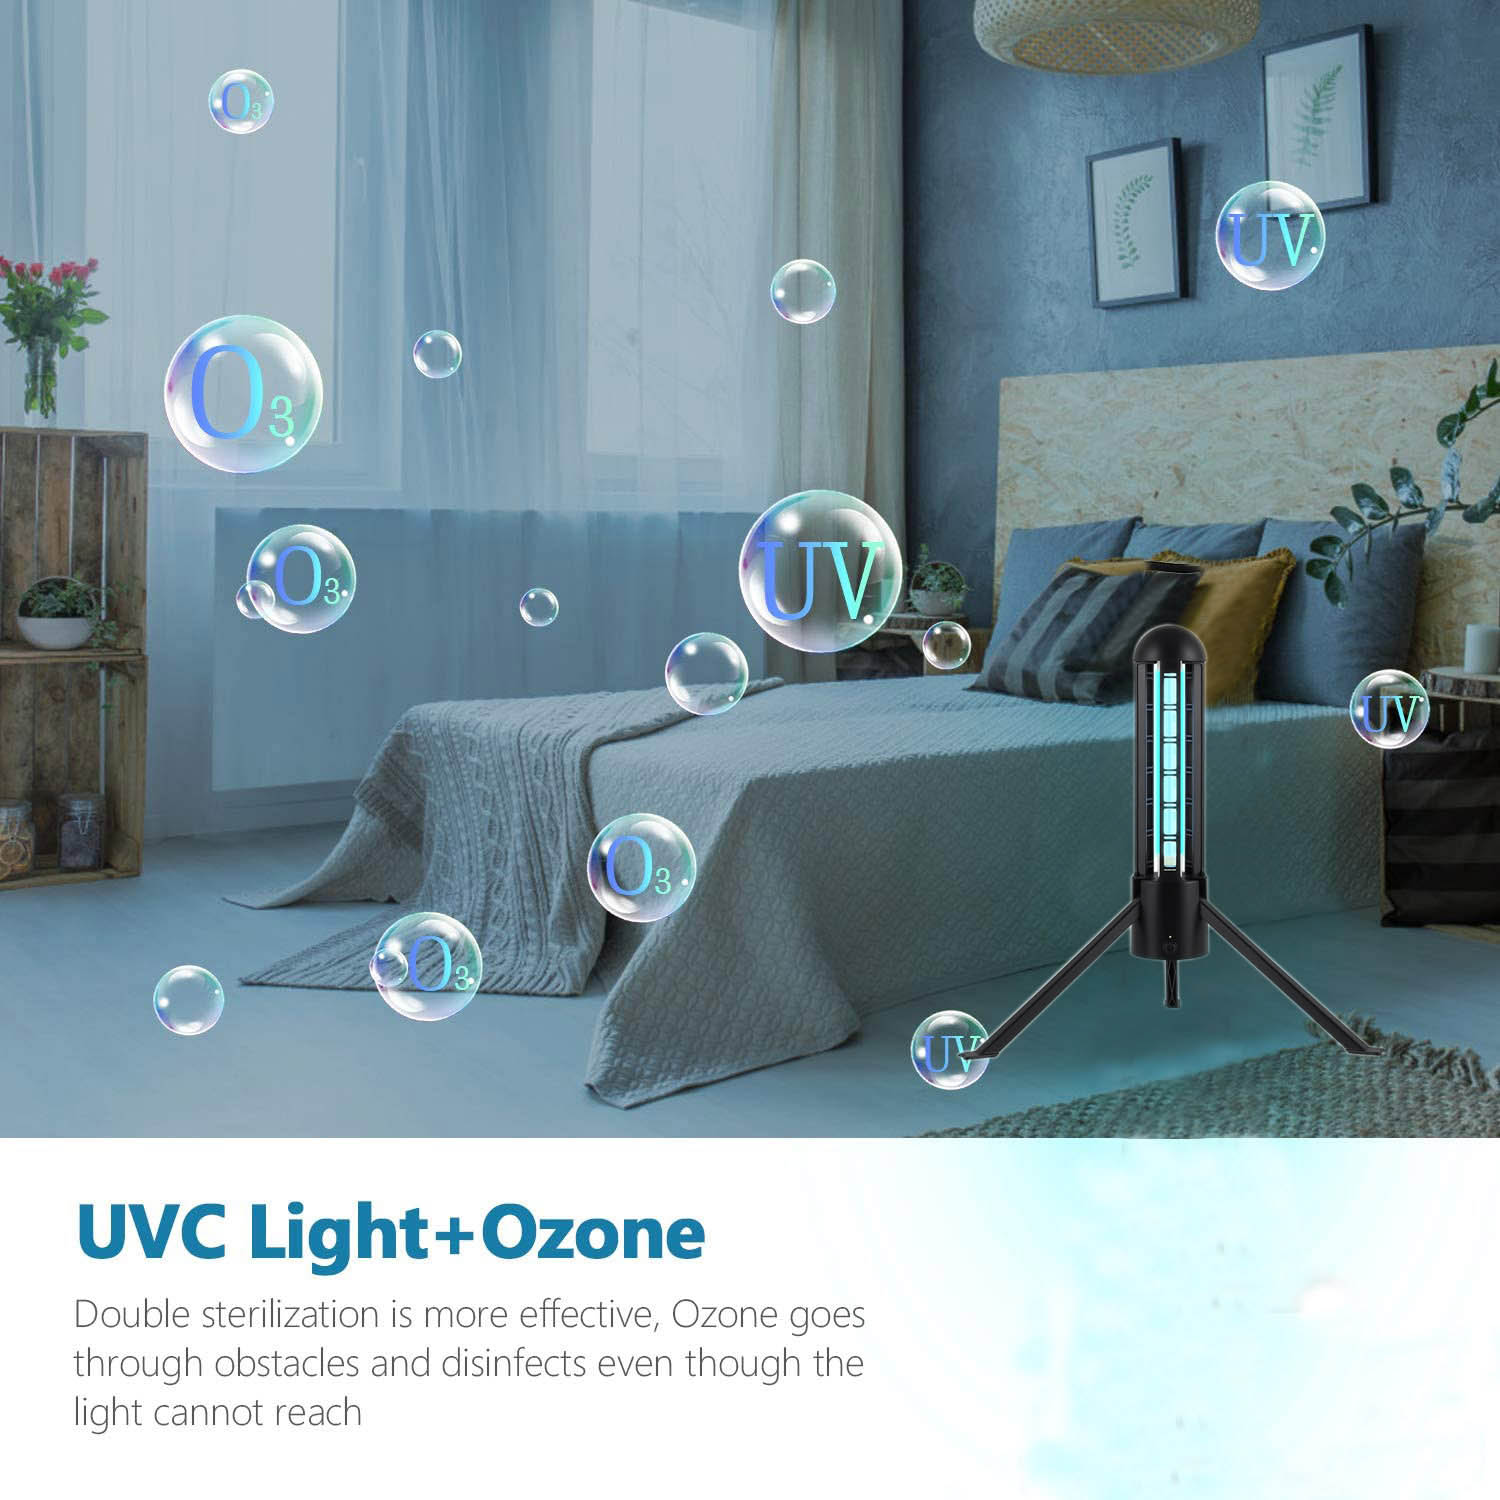 Dezinfekcijska baktericidna UVC svetilka z ozonom - 2